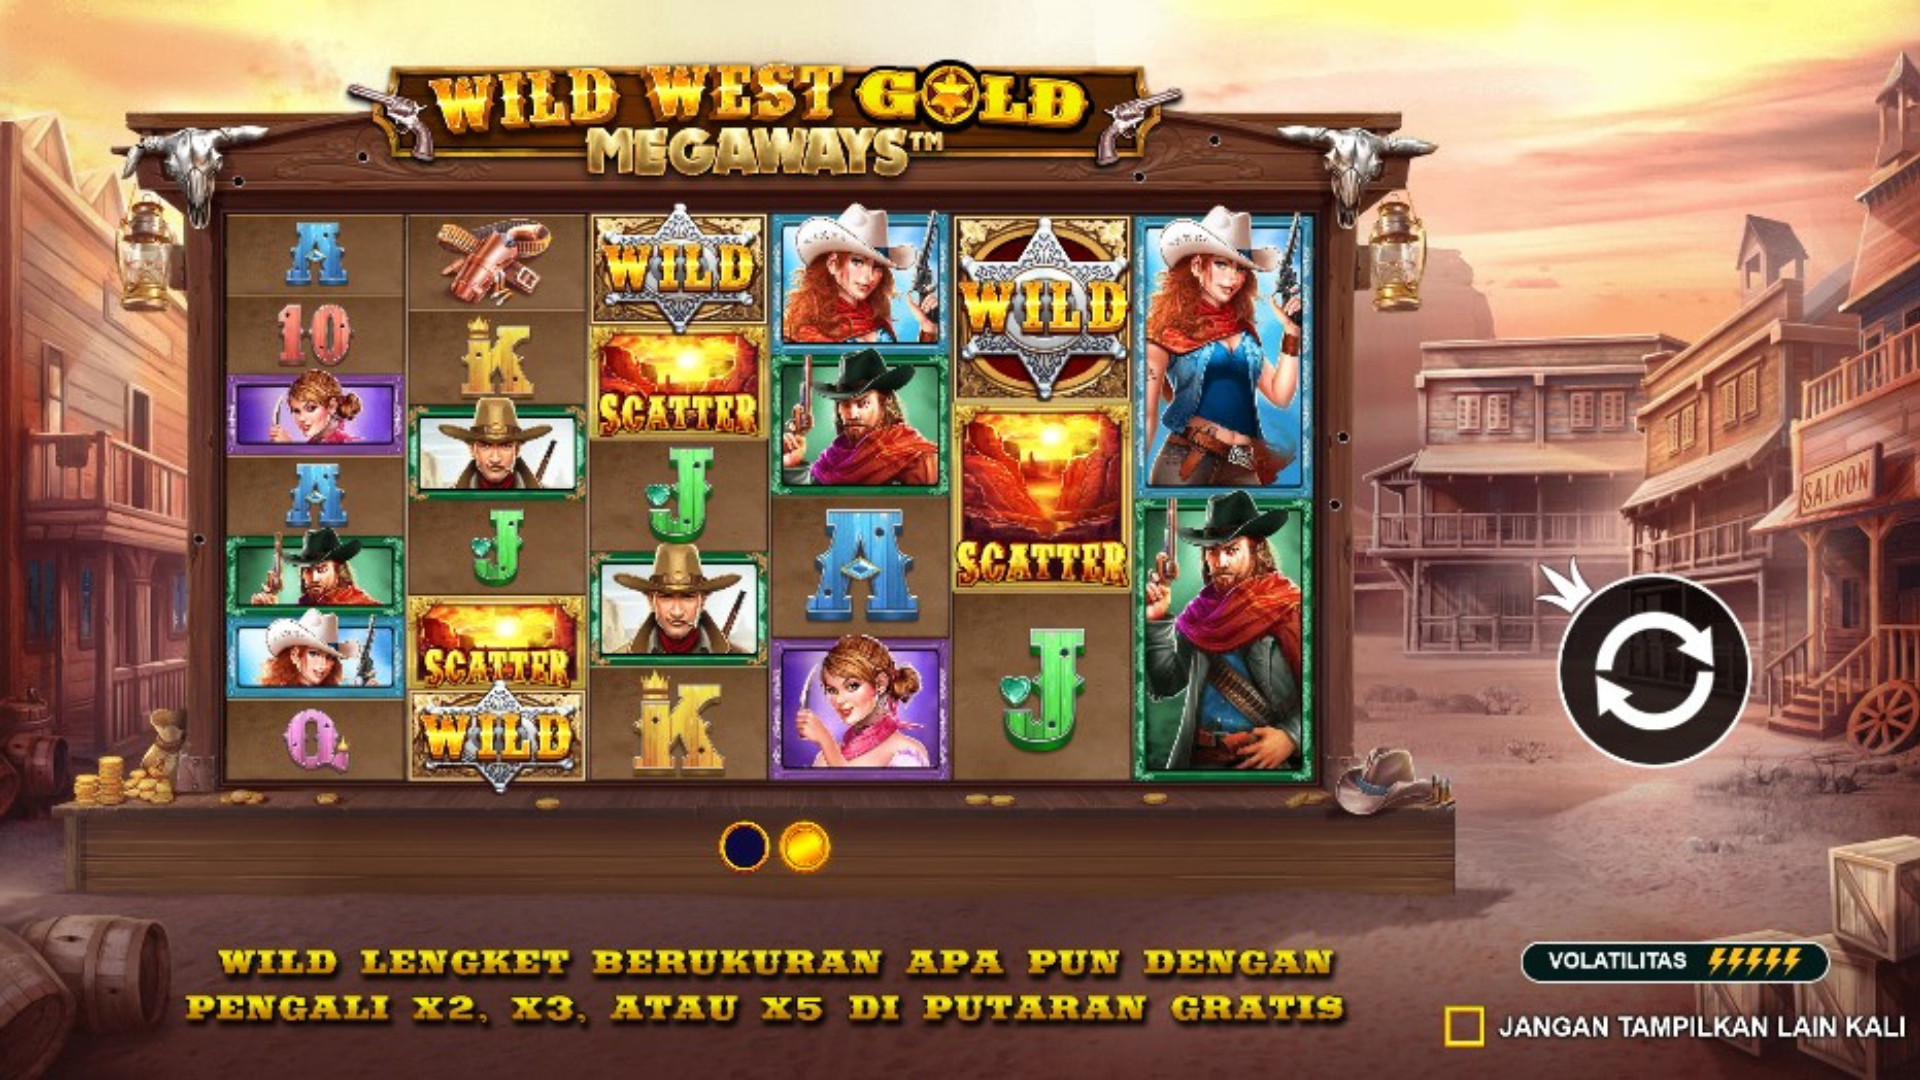 wild-west-gold